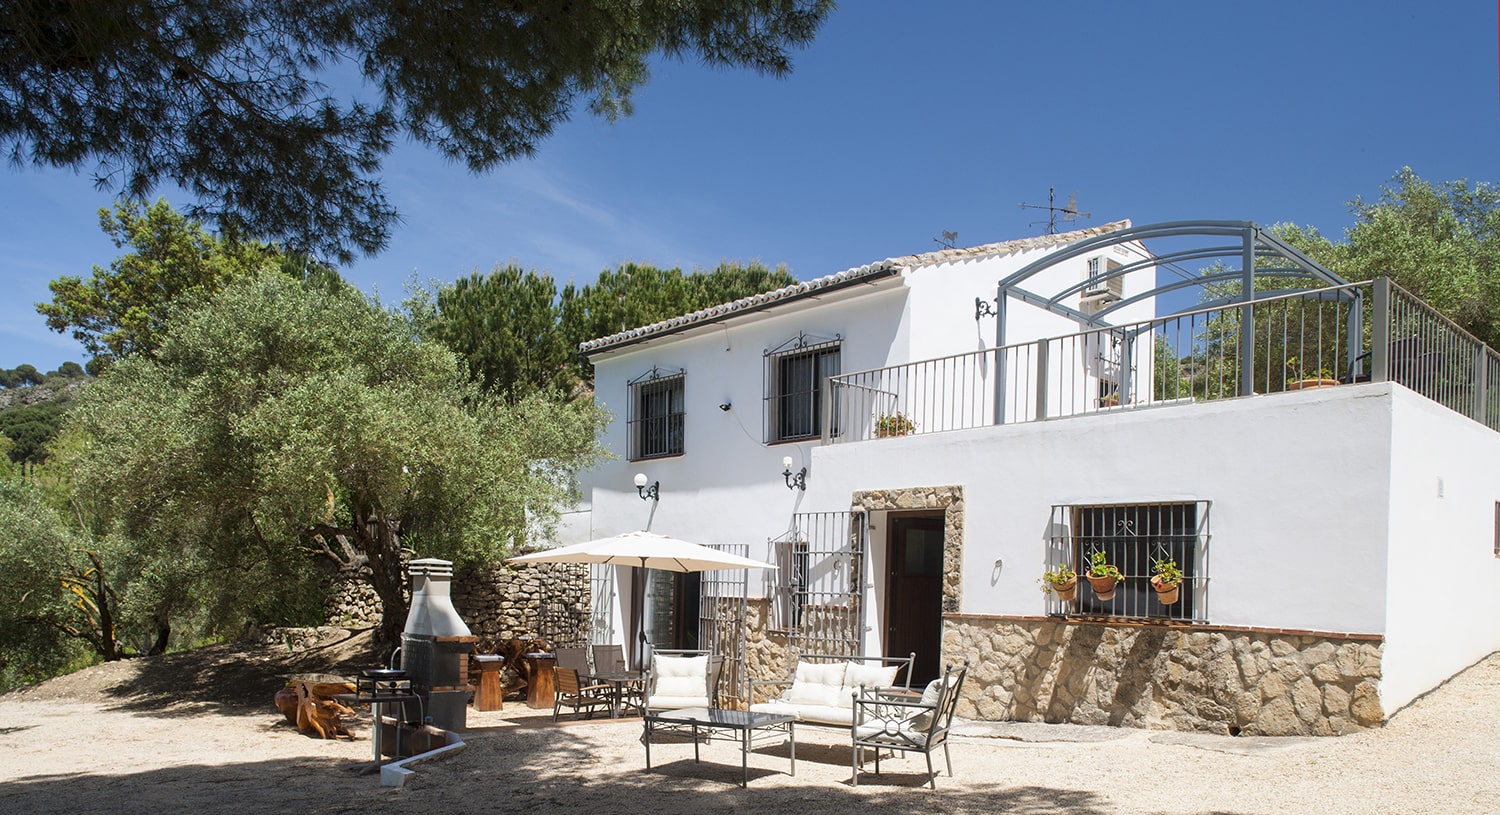 villa andalucia spain garden and facade